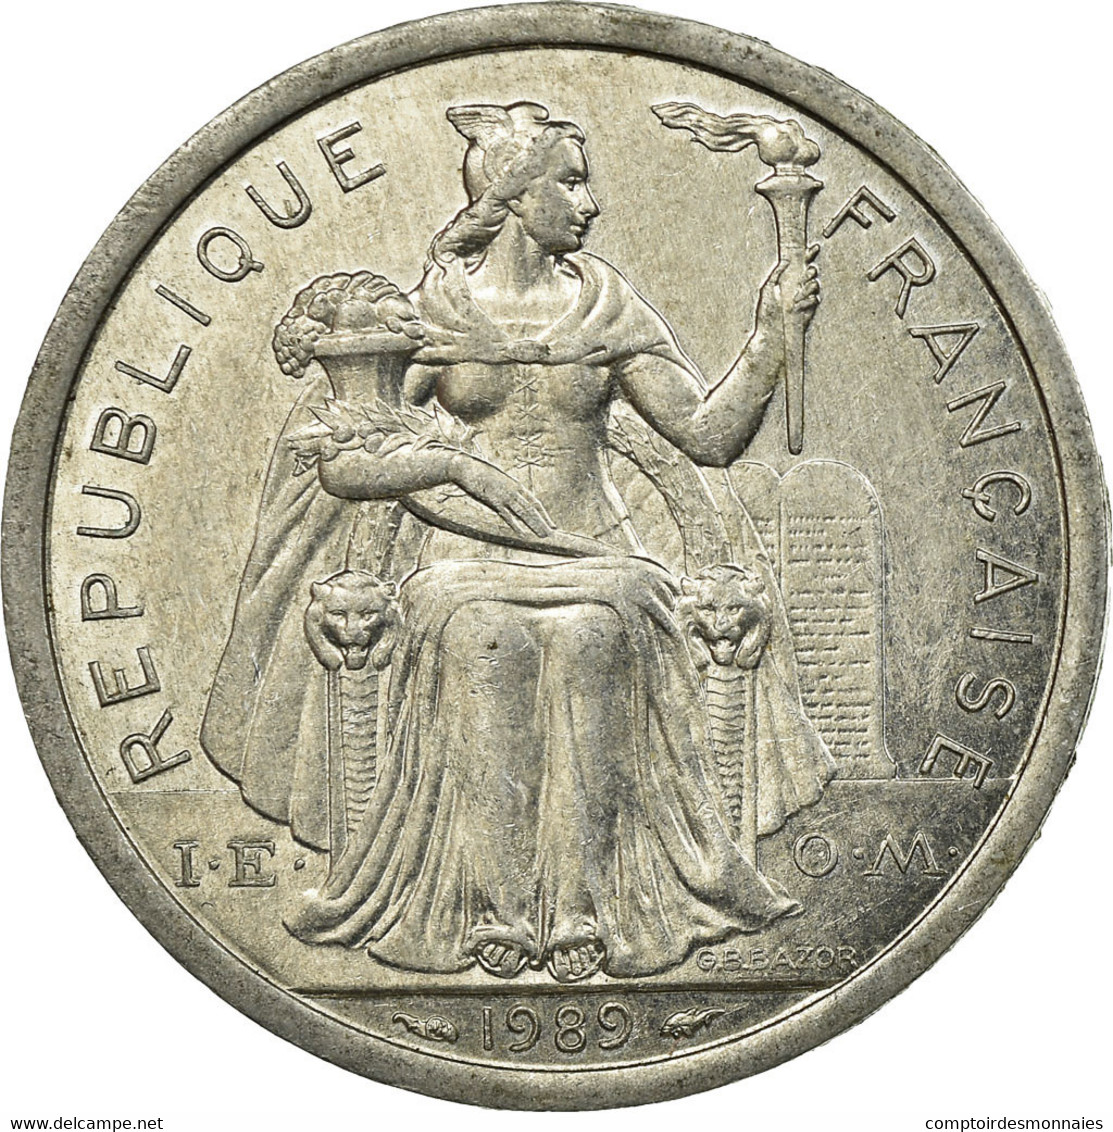 Monnaie, Nouvelle-Calédonie, 2 Francs, 1989, Paris, TTB, Aluminium, KM:14 - Nouvelle-Calédonie